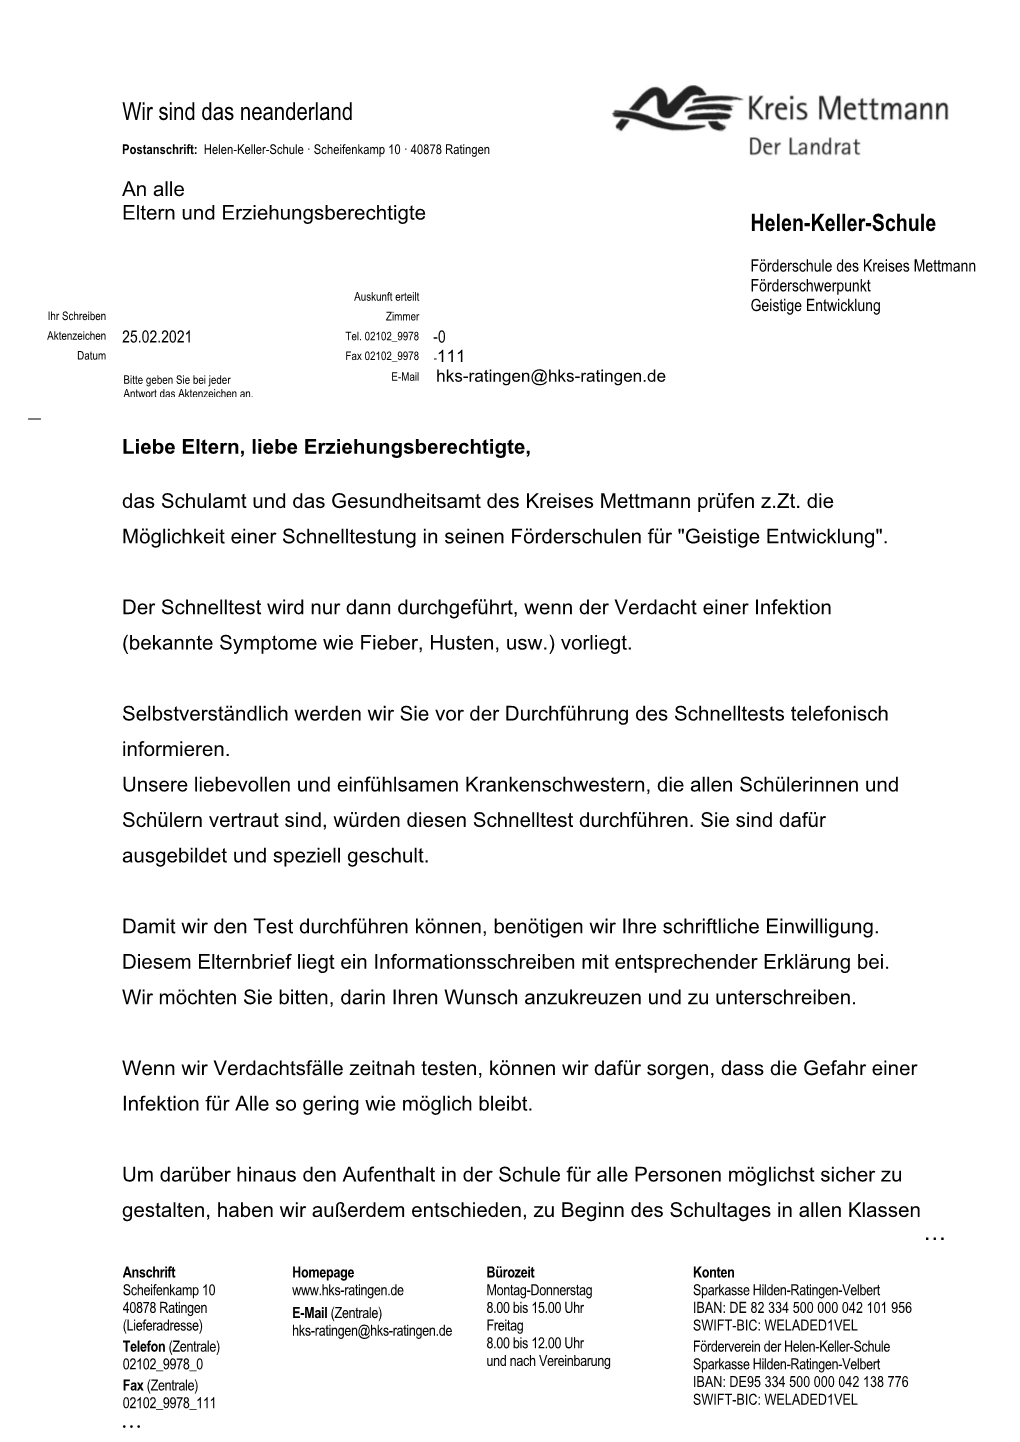 Postanschrift: Kreisverwaltung Mettmann